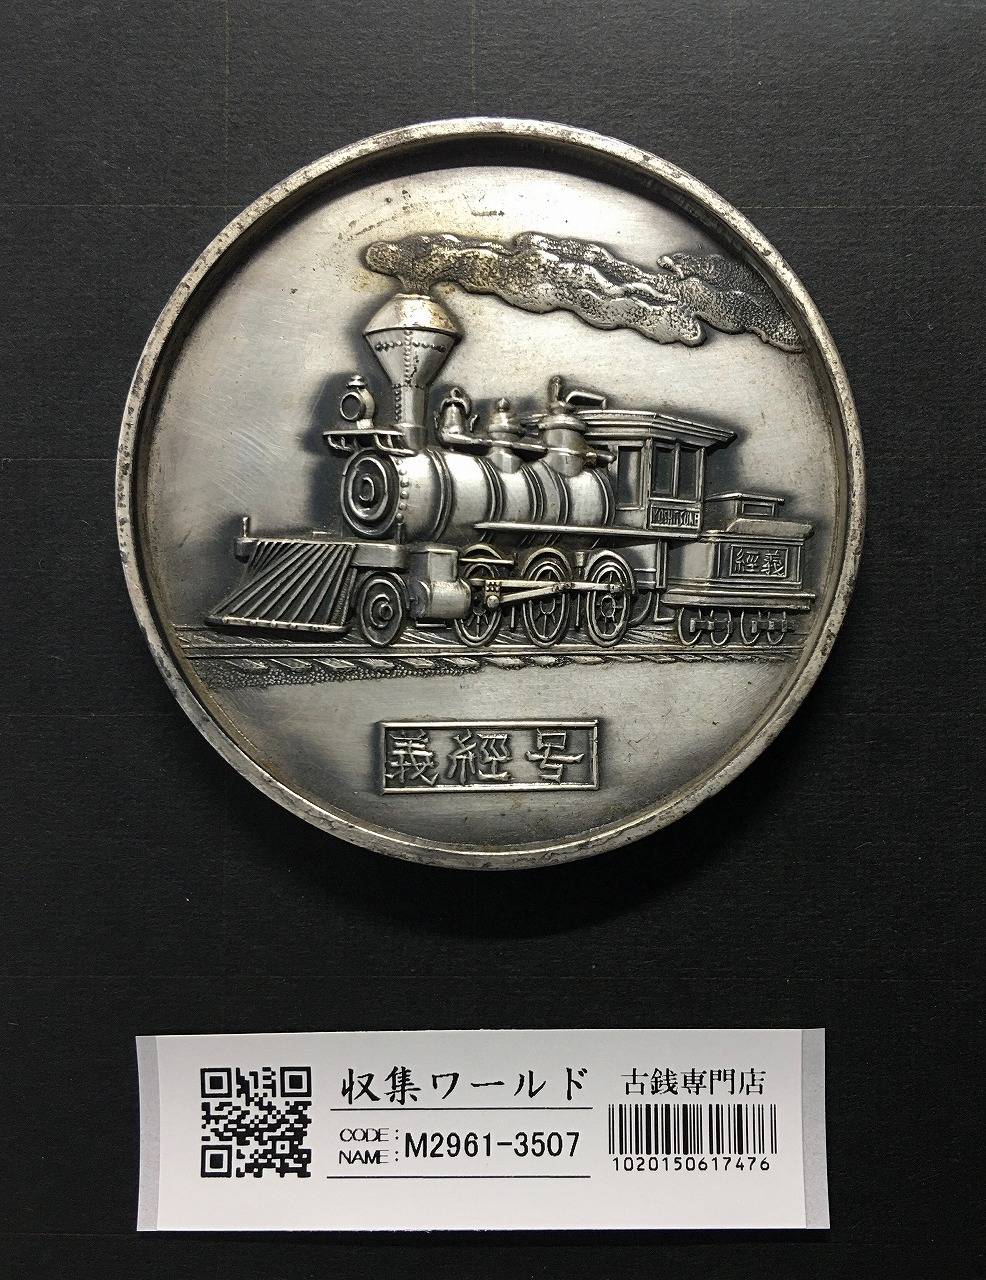 国鉄 蒸気機関車 義経号/鉄道唱歌/記念大型メダル φ69.9mm 1972年 美品